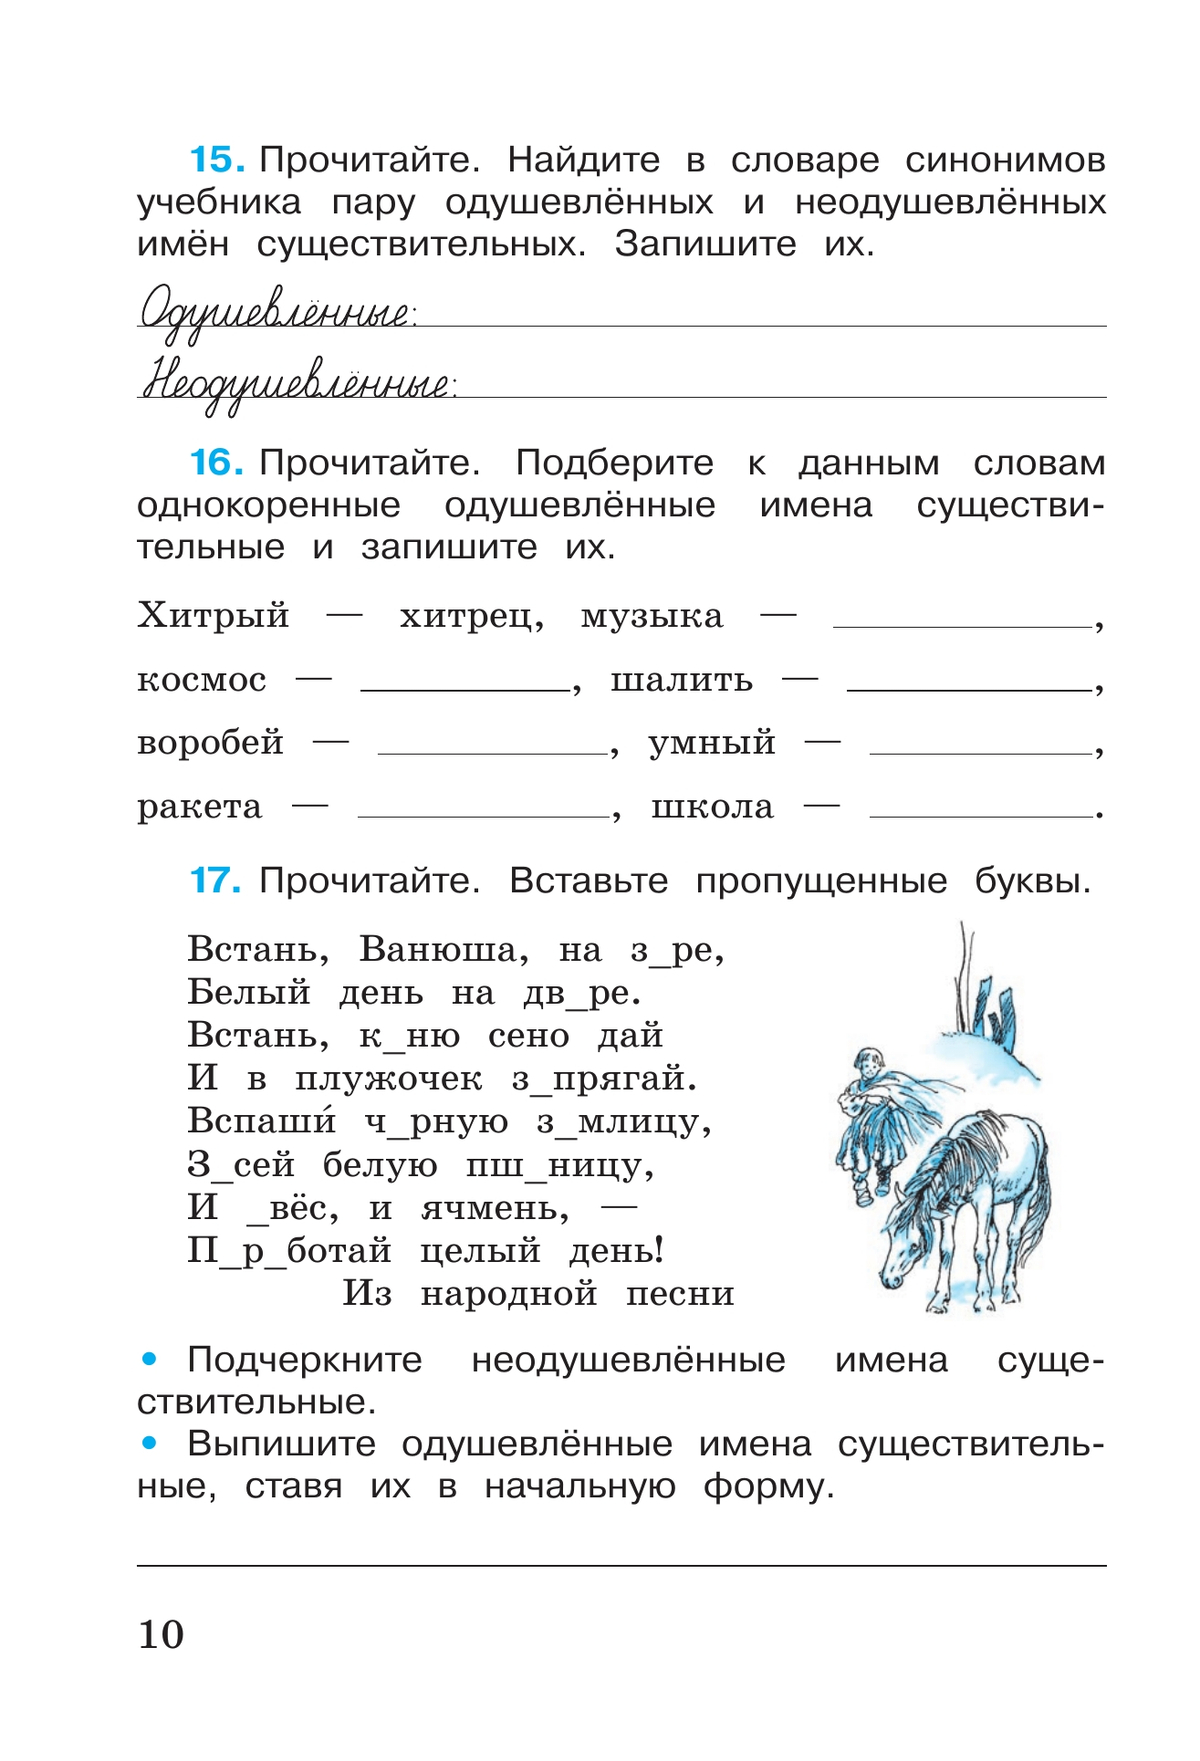 Русский язык. Рабочая тетрадь. 3 класс. В 2 частях. Часть 2 9